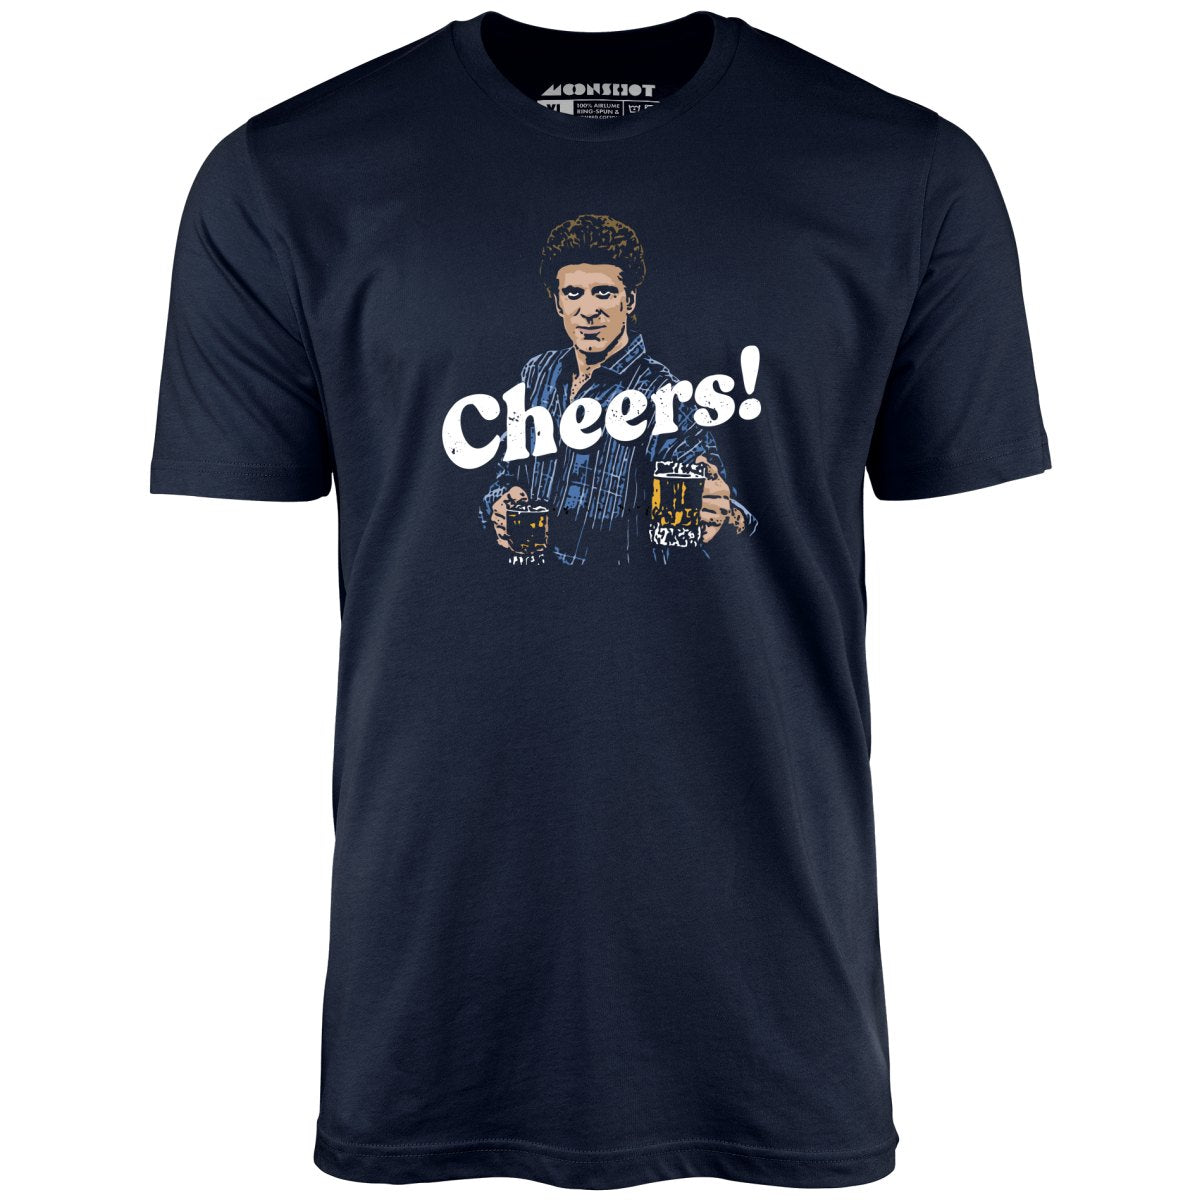 Cheers! - Unisex T-Shirt